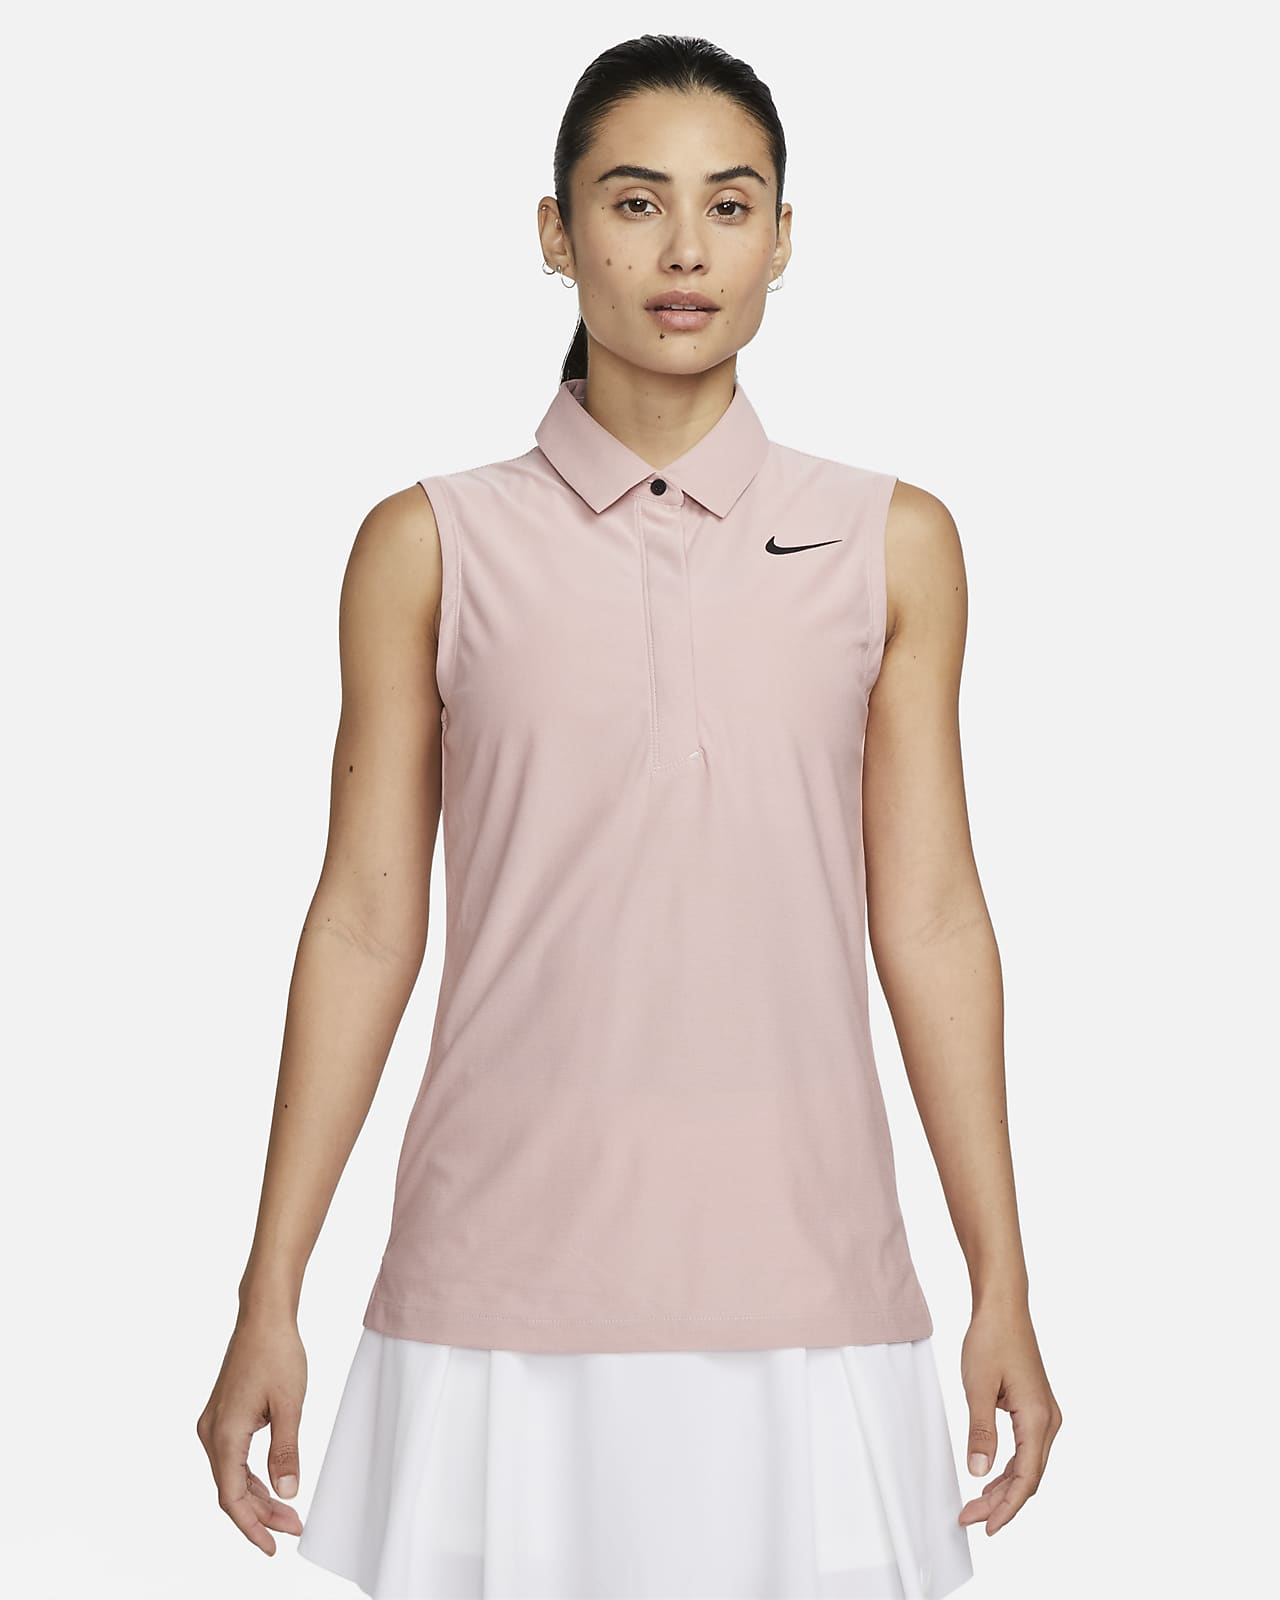 Nike Dri-FIT ADV Tour Women's Sleeveless Golf Polo.